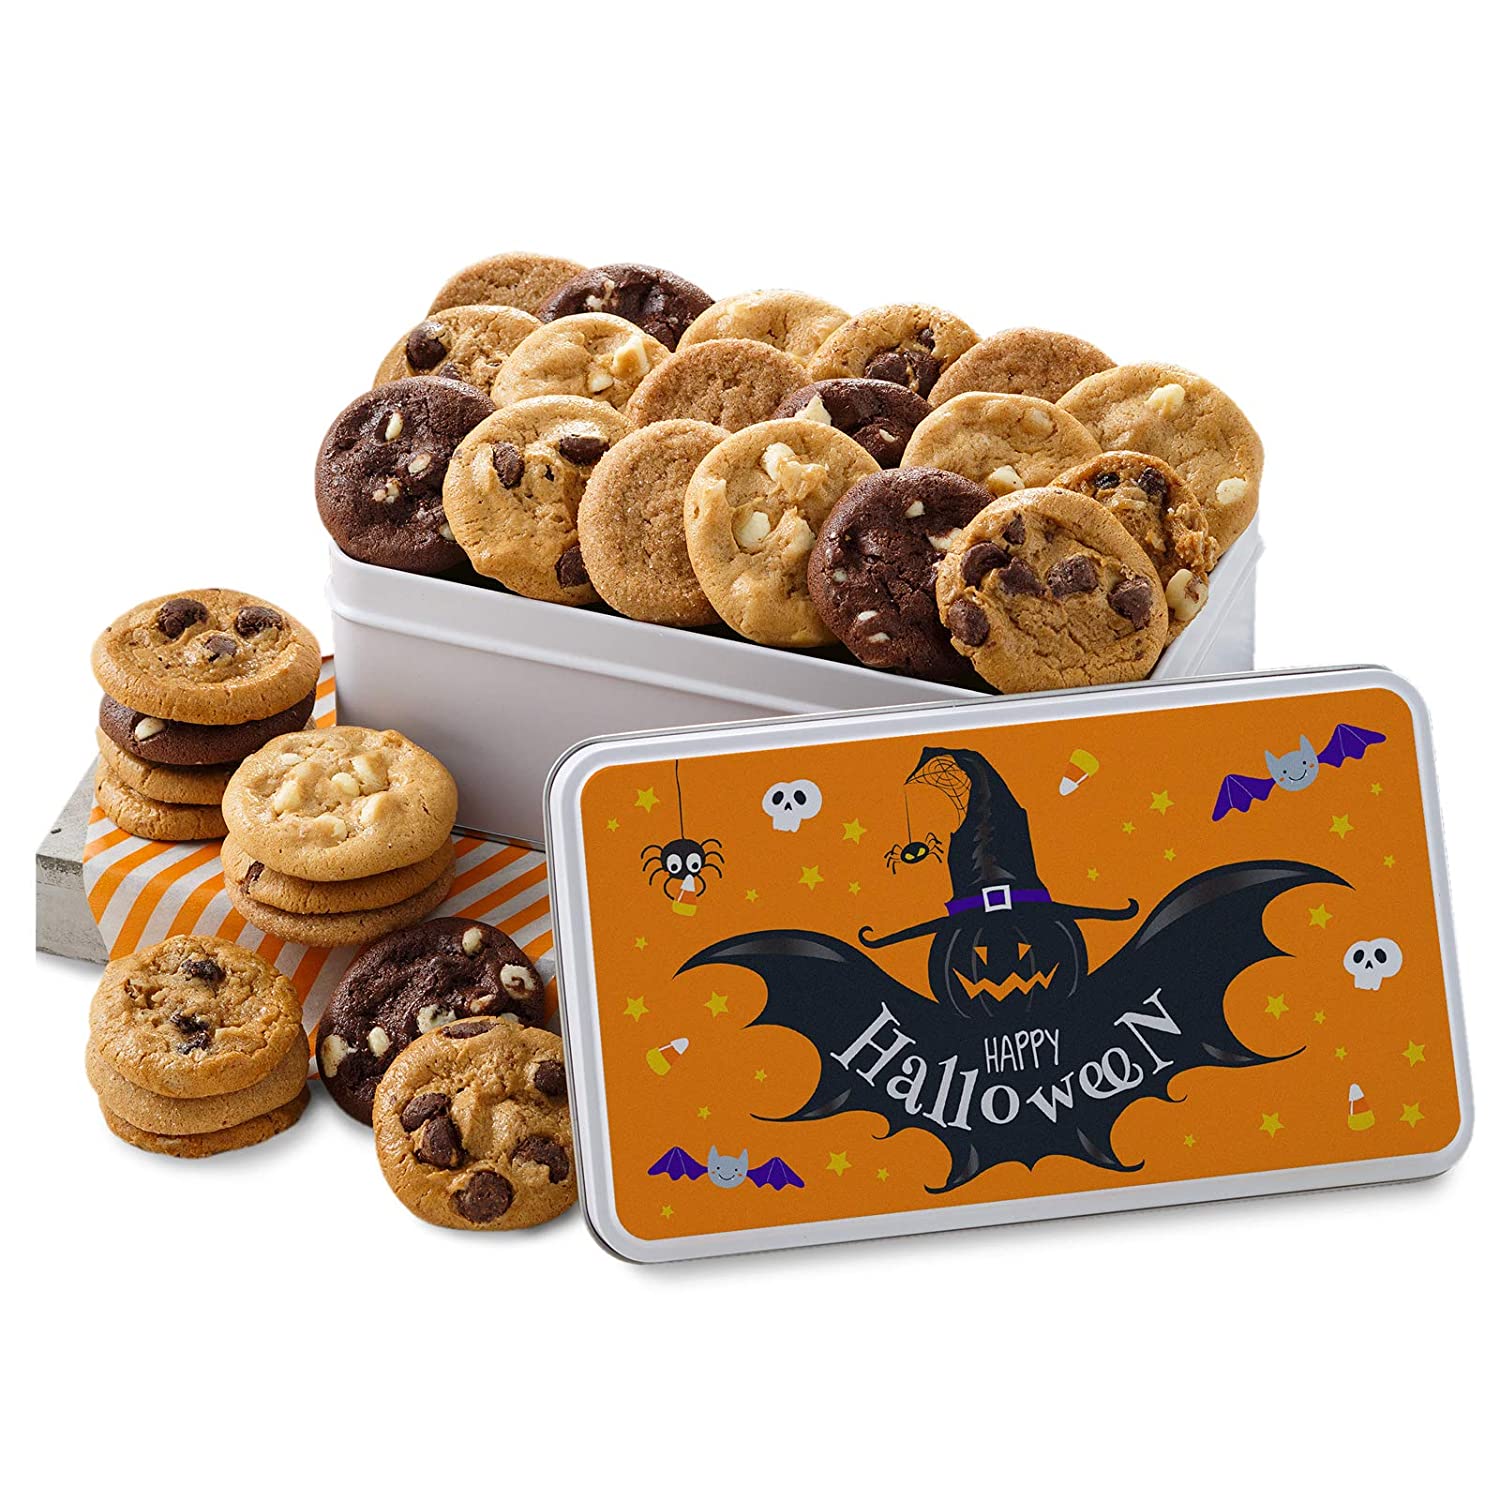  6. Mrs. Fields Halloween Cookies 